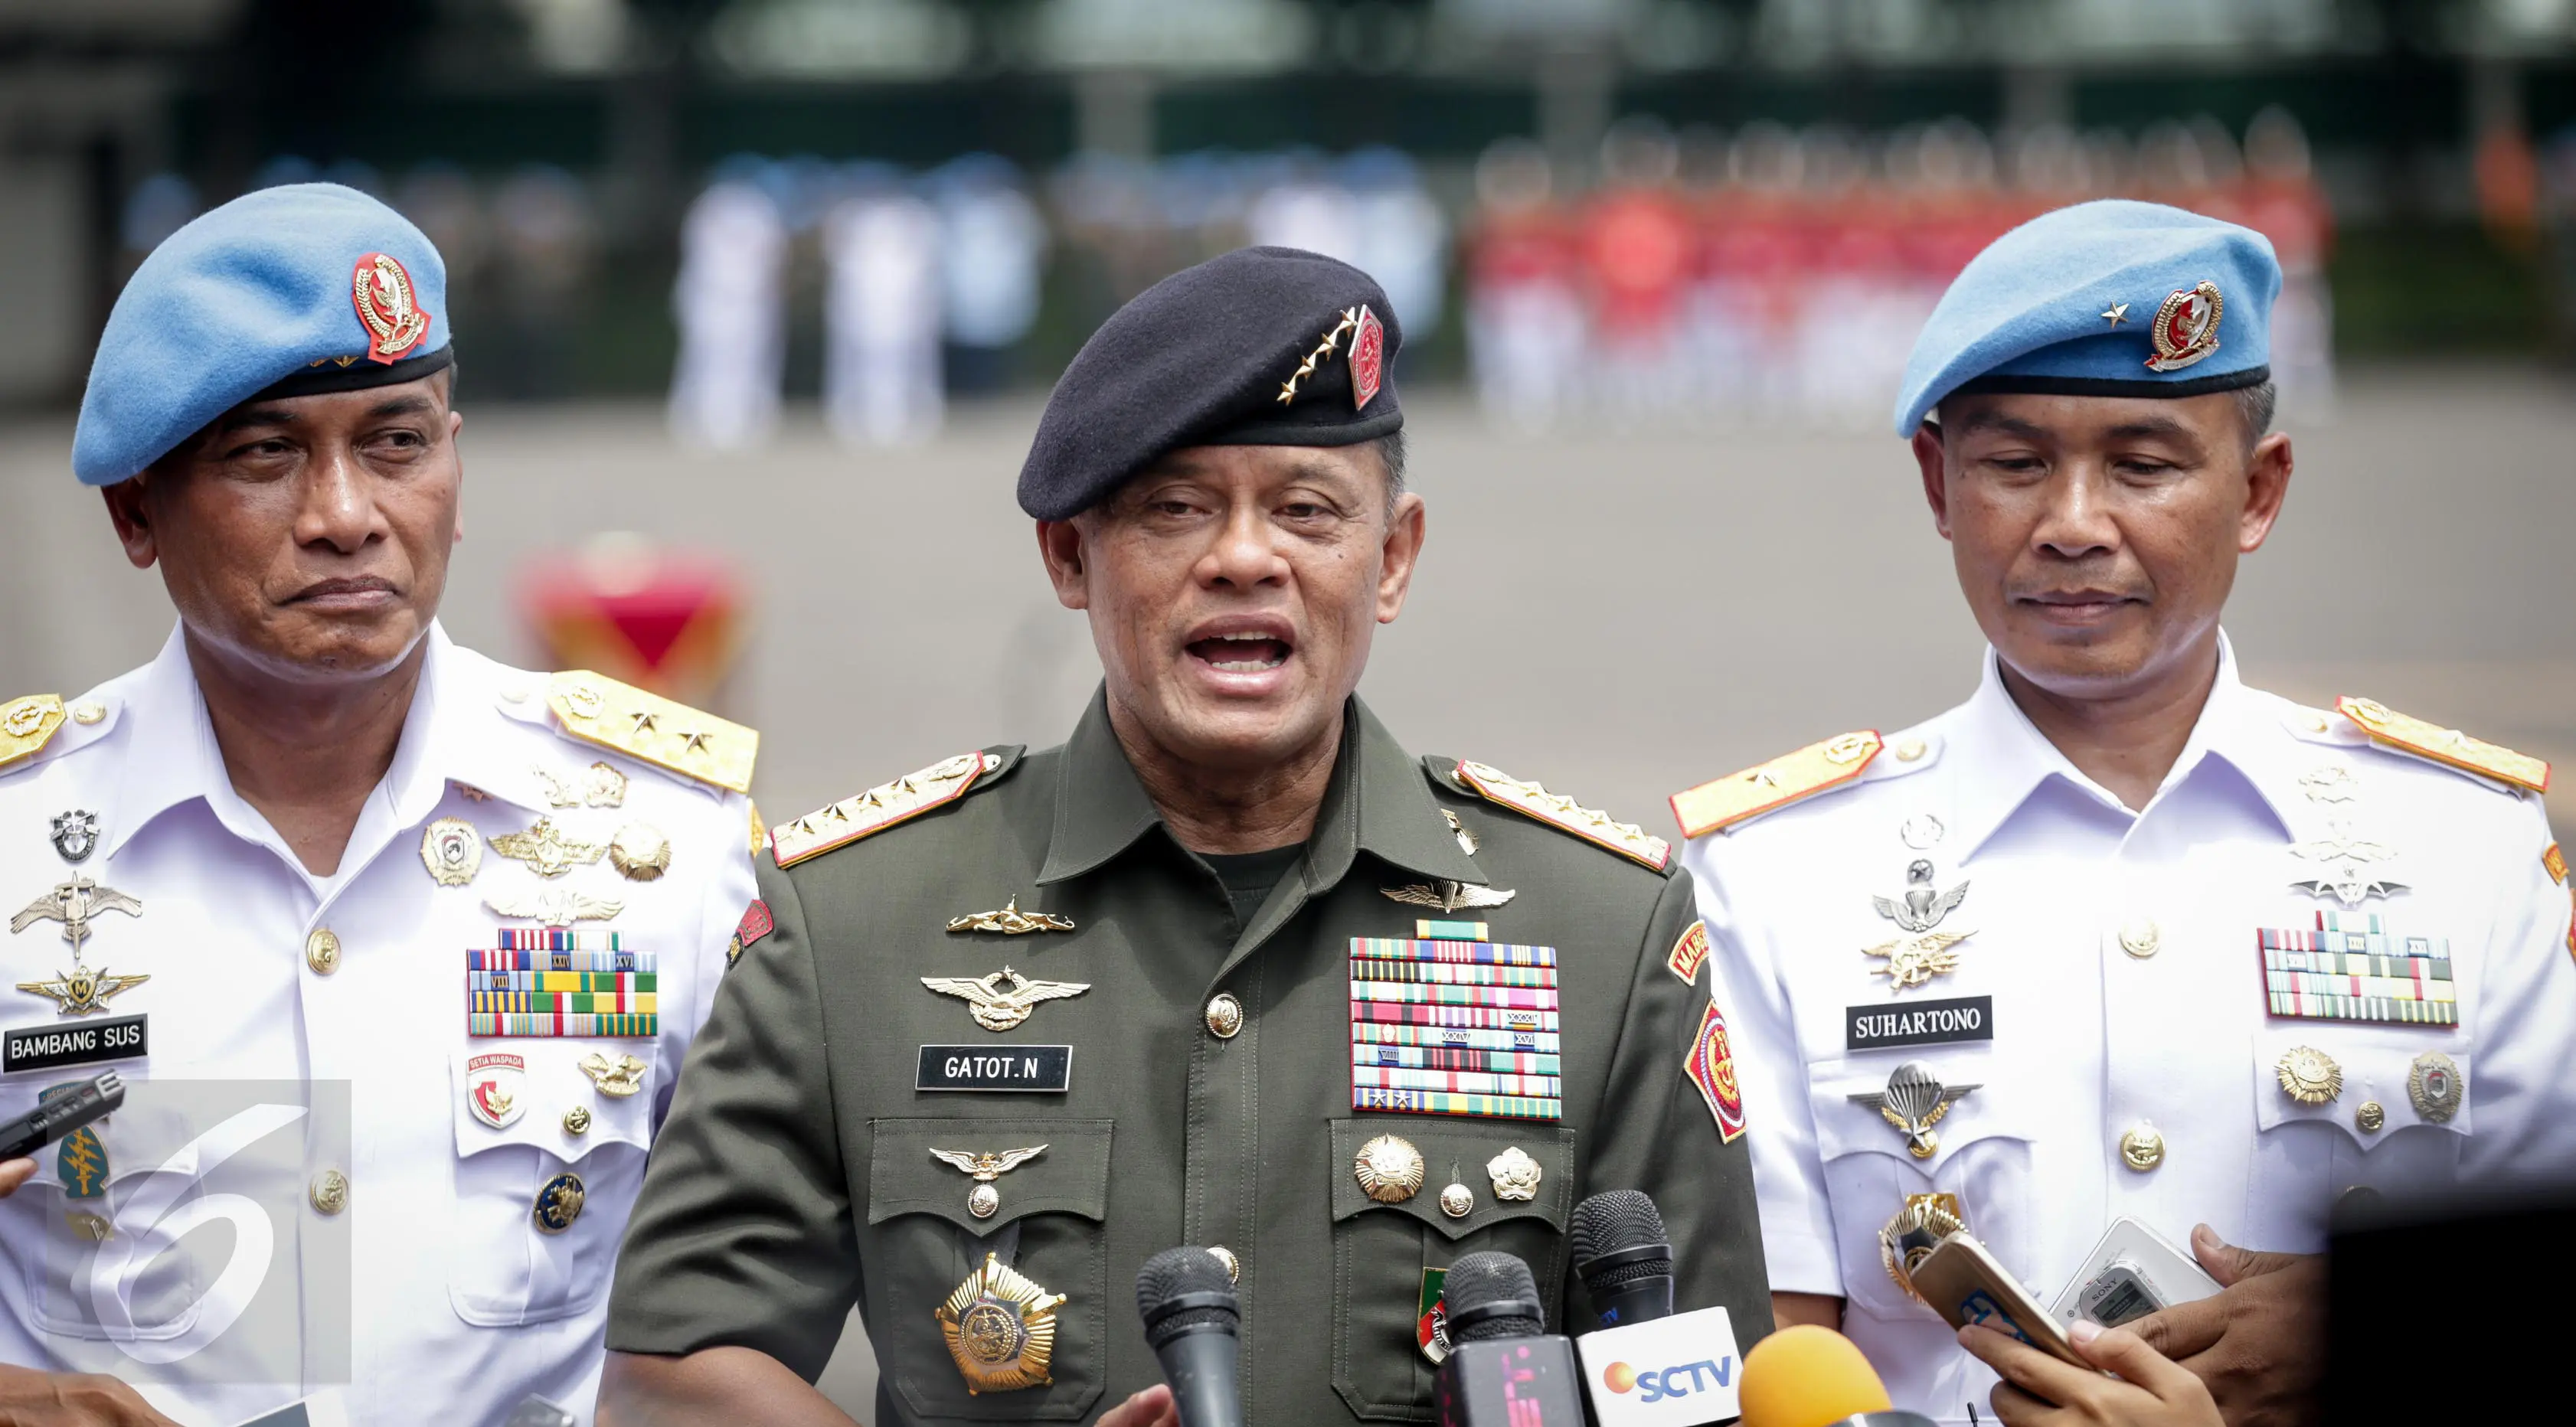 Panglima TNI Jenderal Gatot Nurmantyo memberikan keterangan usai sertijab Komandan Pasukan Pengamanan Presiden (Danpaspampres) di Jakarta, Selasa (14/3). Brigjen TNI (Mar) Suhartono resmi menggantikan Mayjen Bambang Suswantono (Liputan6.com/Faizal Fanani)